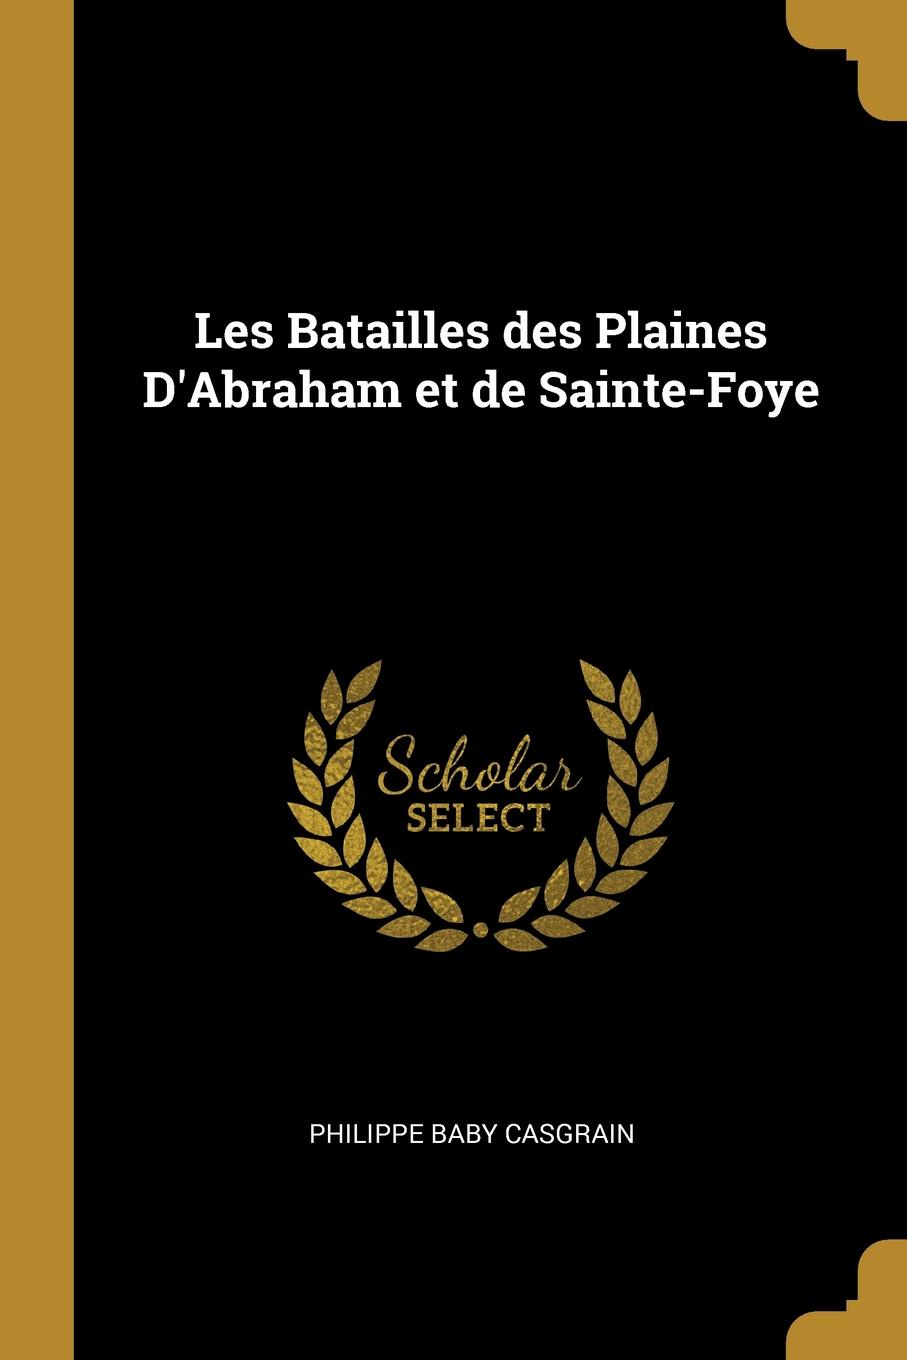 Les Batailles des Plaines D.Abraham et de Sainte-Foye